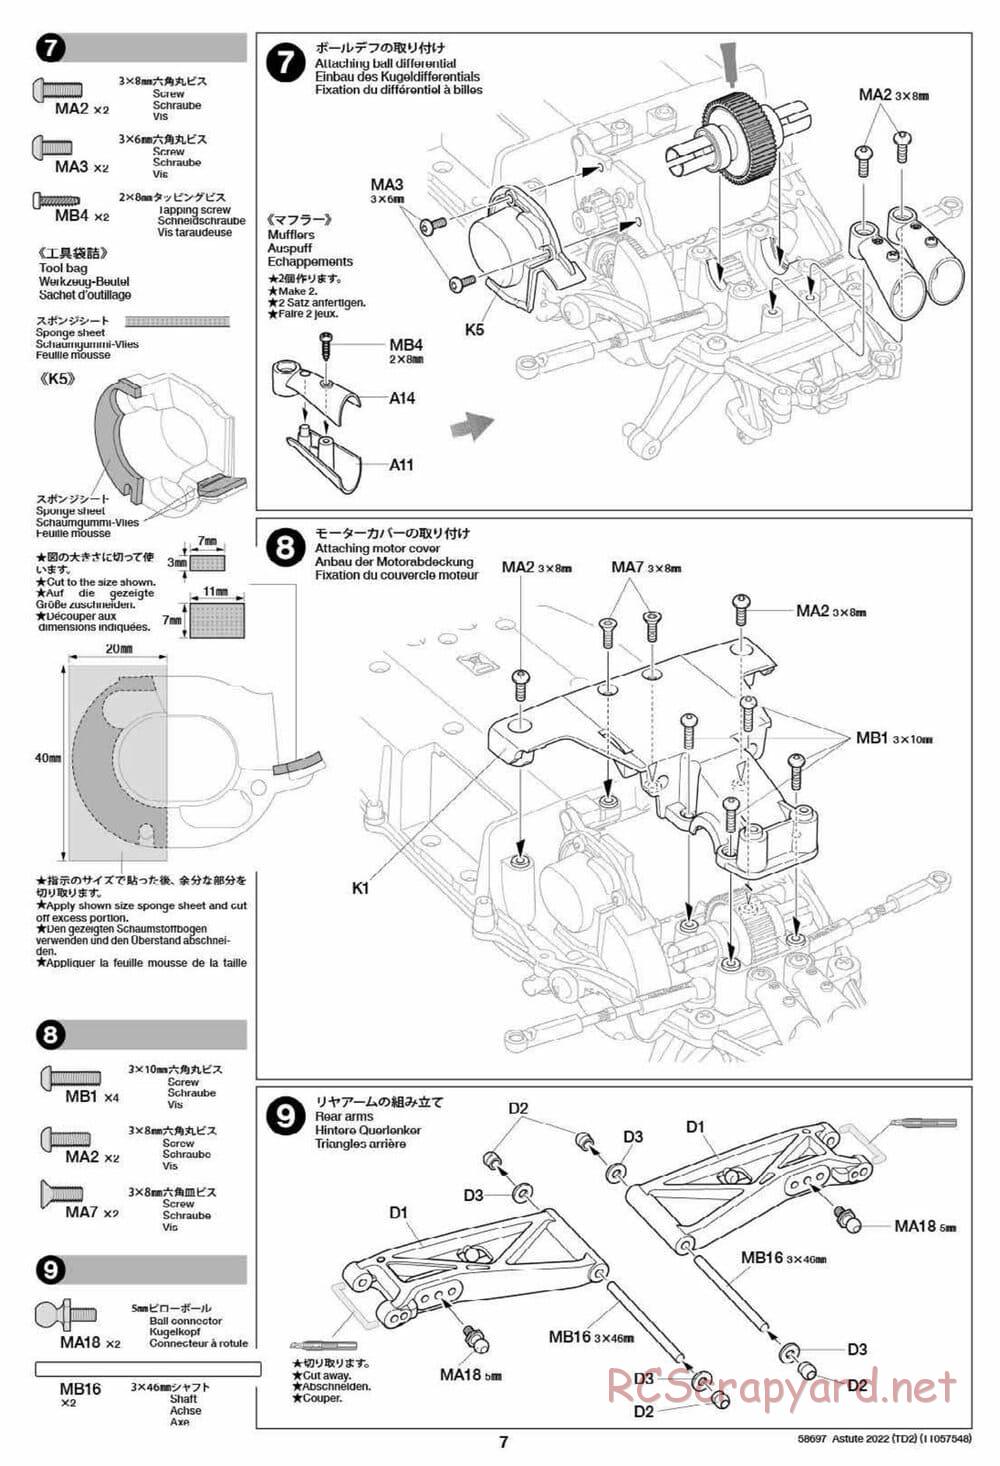 Tamiya - Astute 2022 - TD2 Chassis - Manual - Page 7